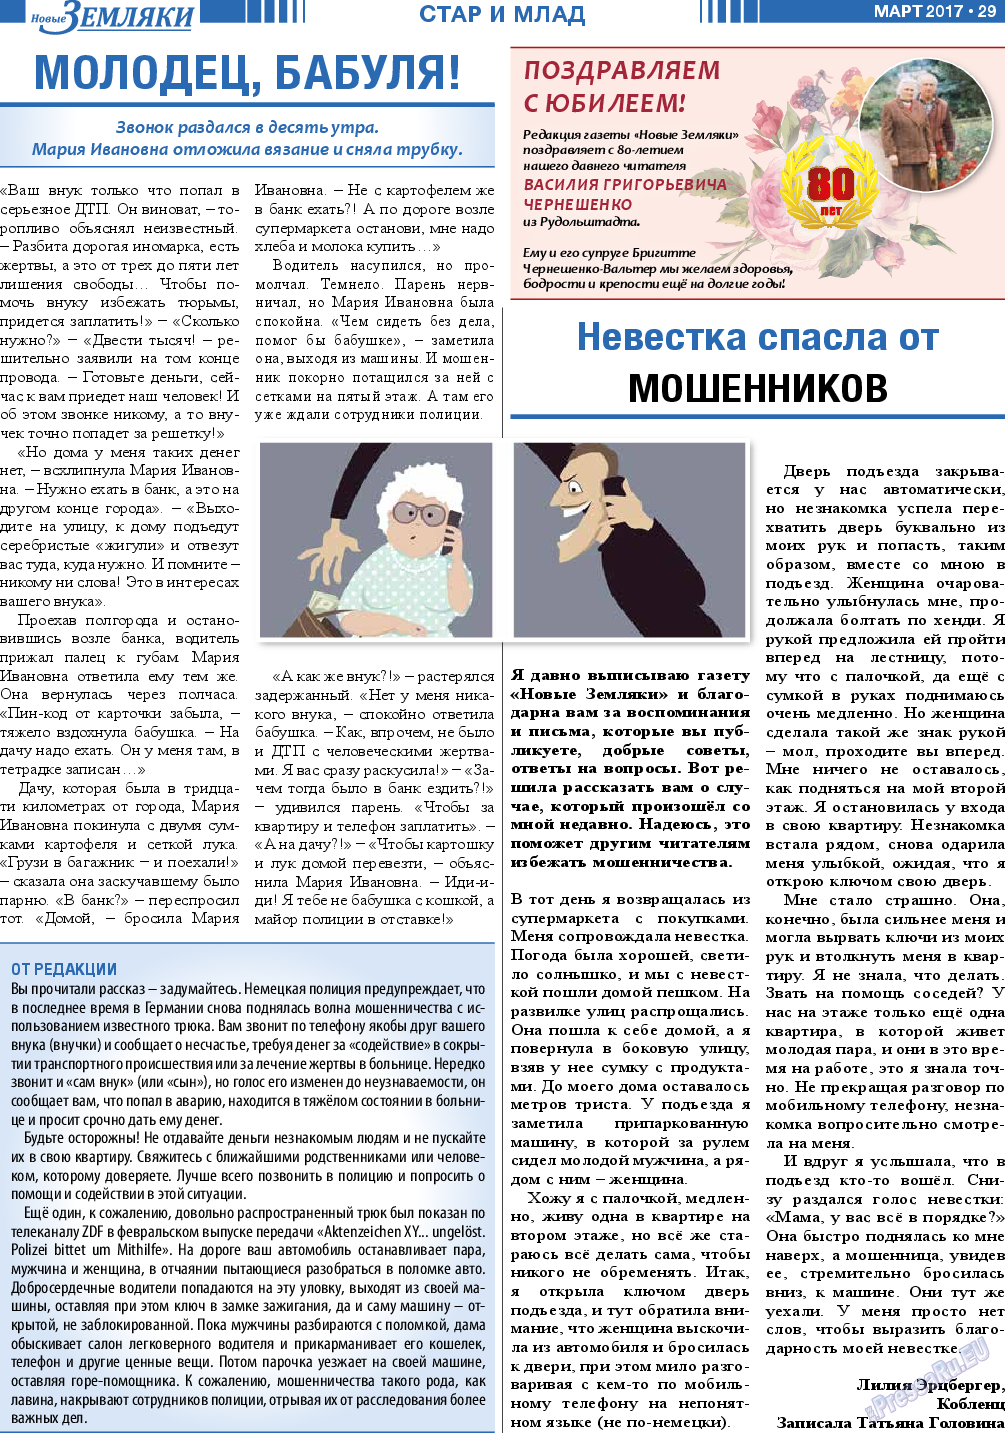 Новые Земляки (газета). 2017 год, номер 3, стр. 29